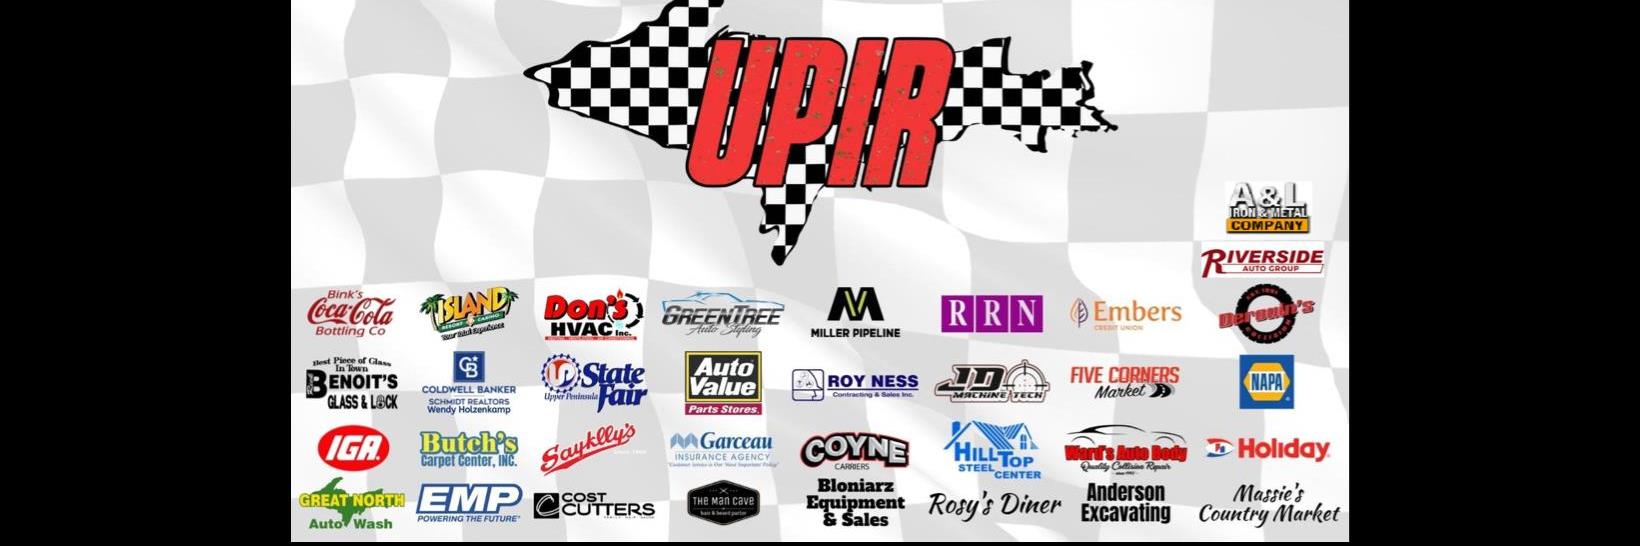 5/21/2022 - Upper Peninsula International Raceway